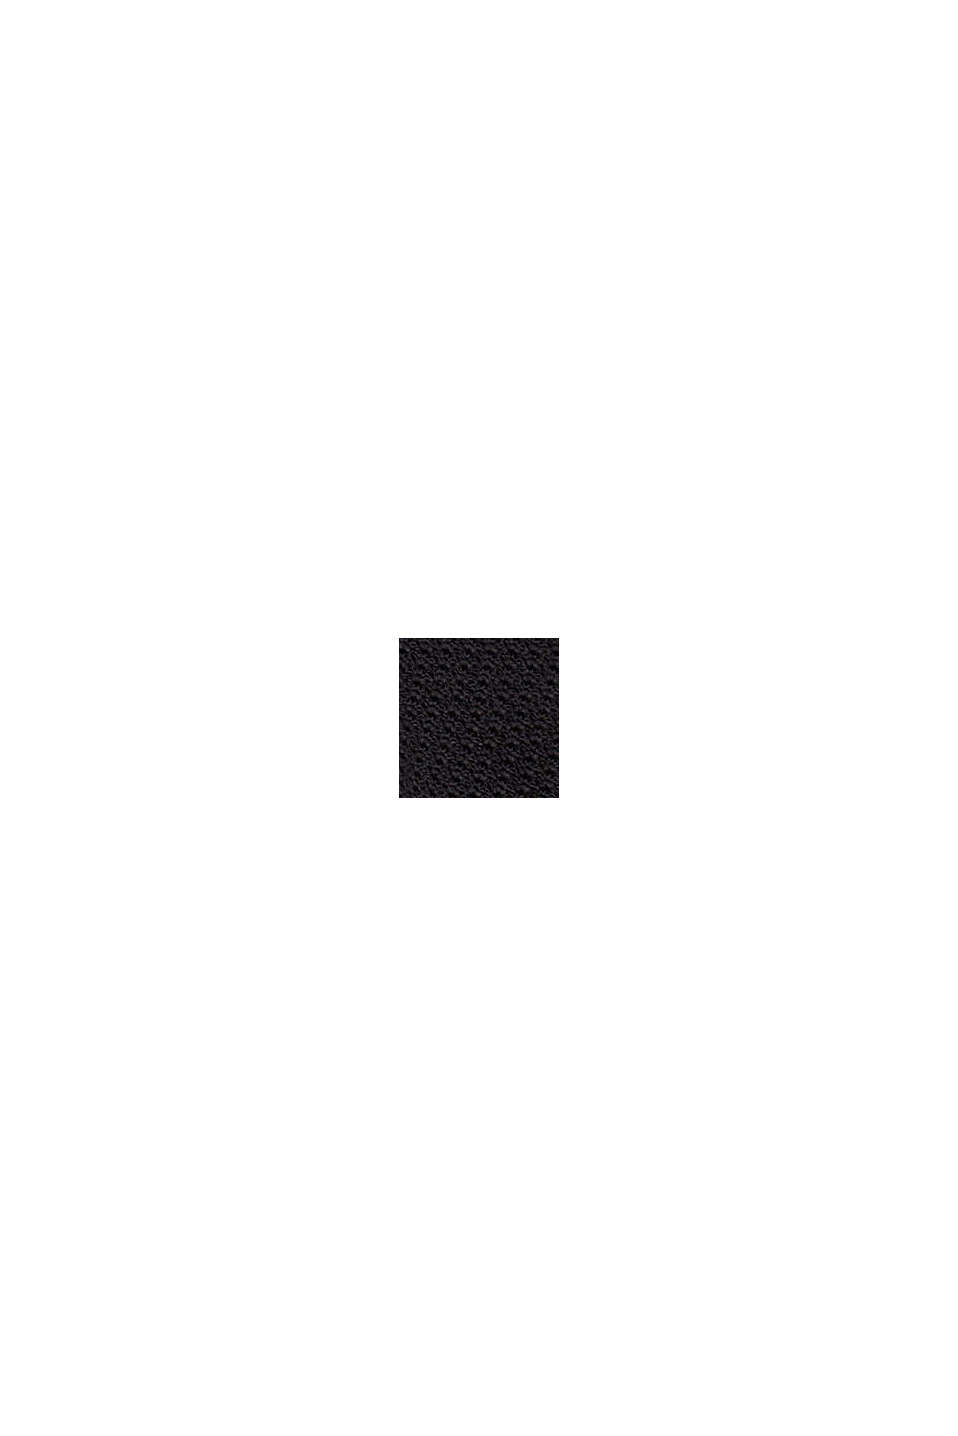 Jersey de punto texturizado con cuello alto, BLACK, swatch